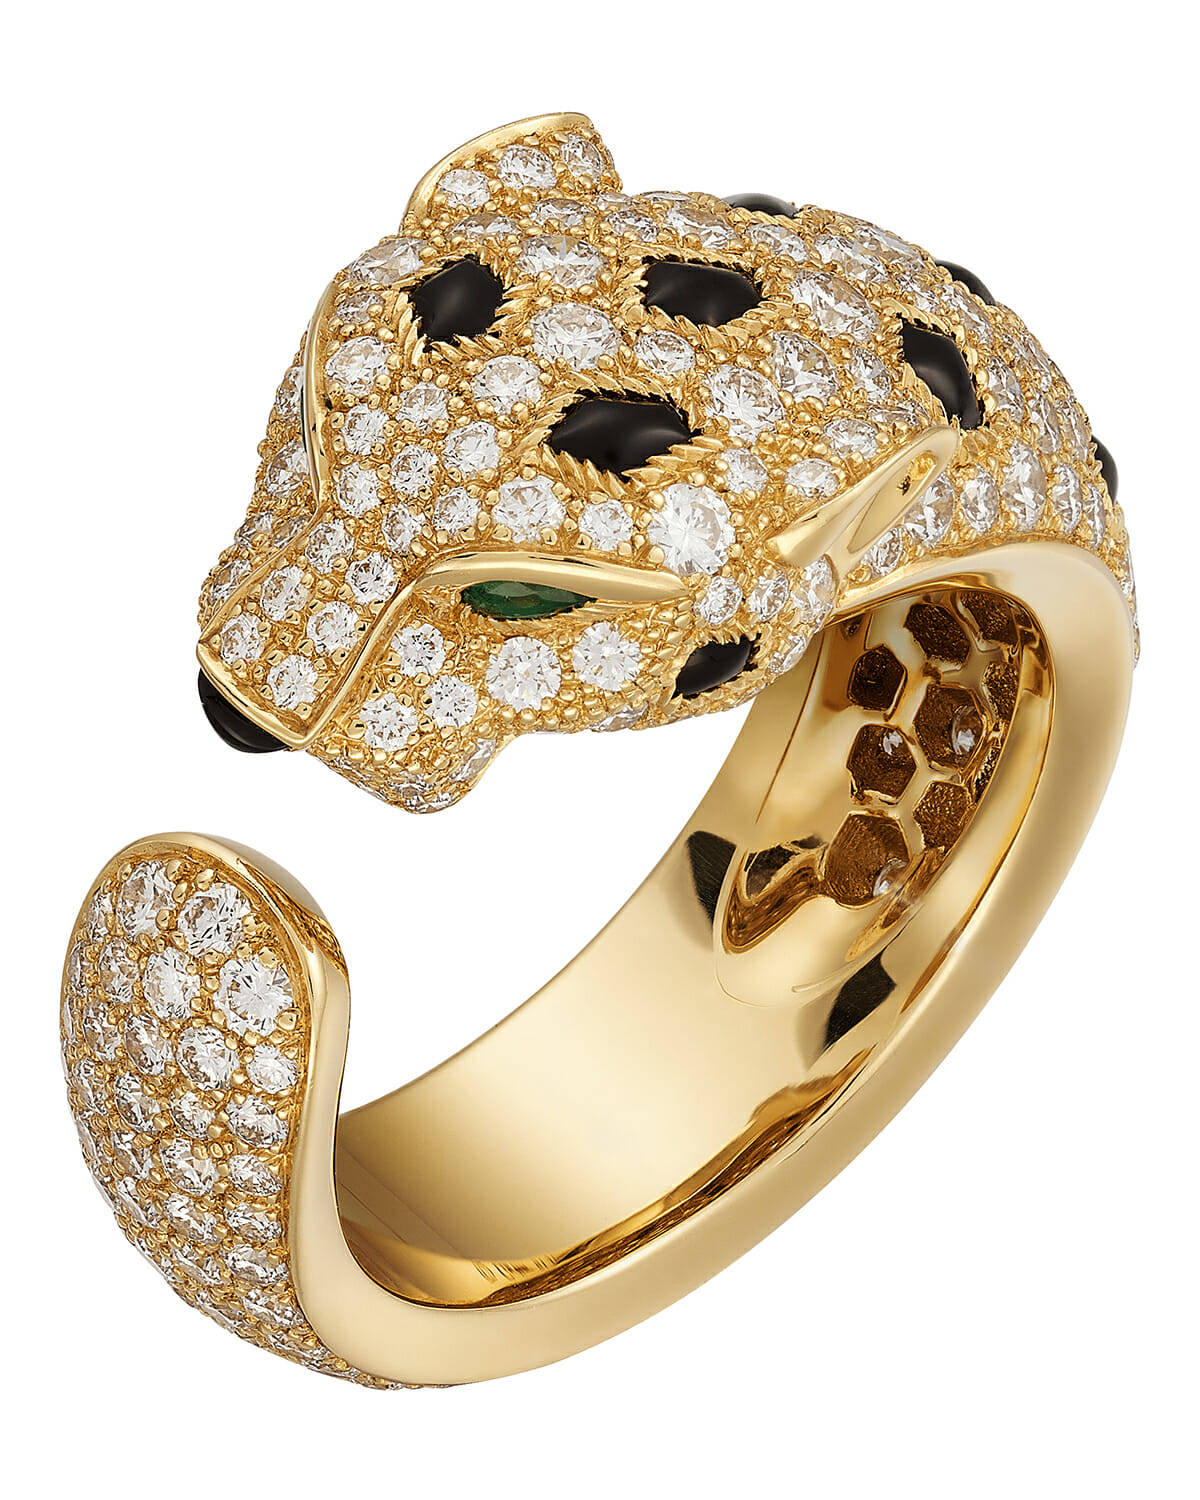 Panthère de Cartier bracelet ring.